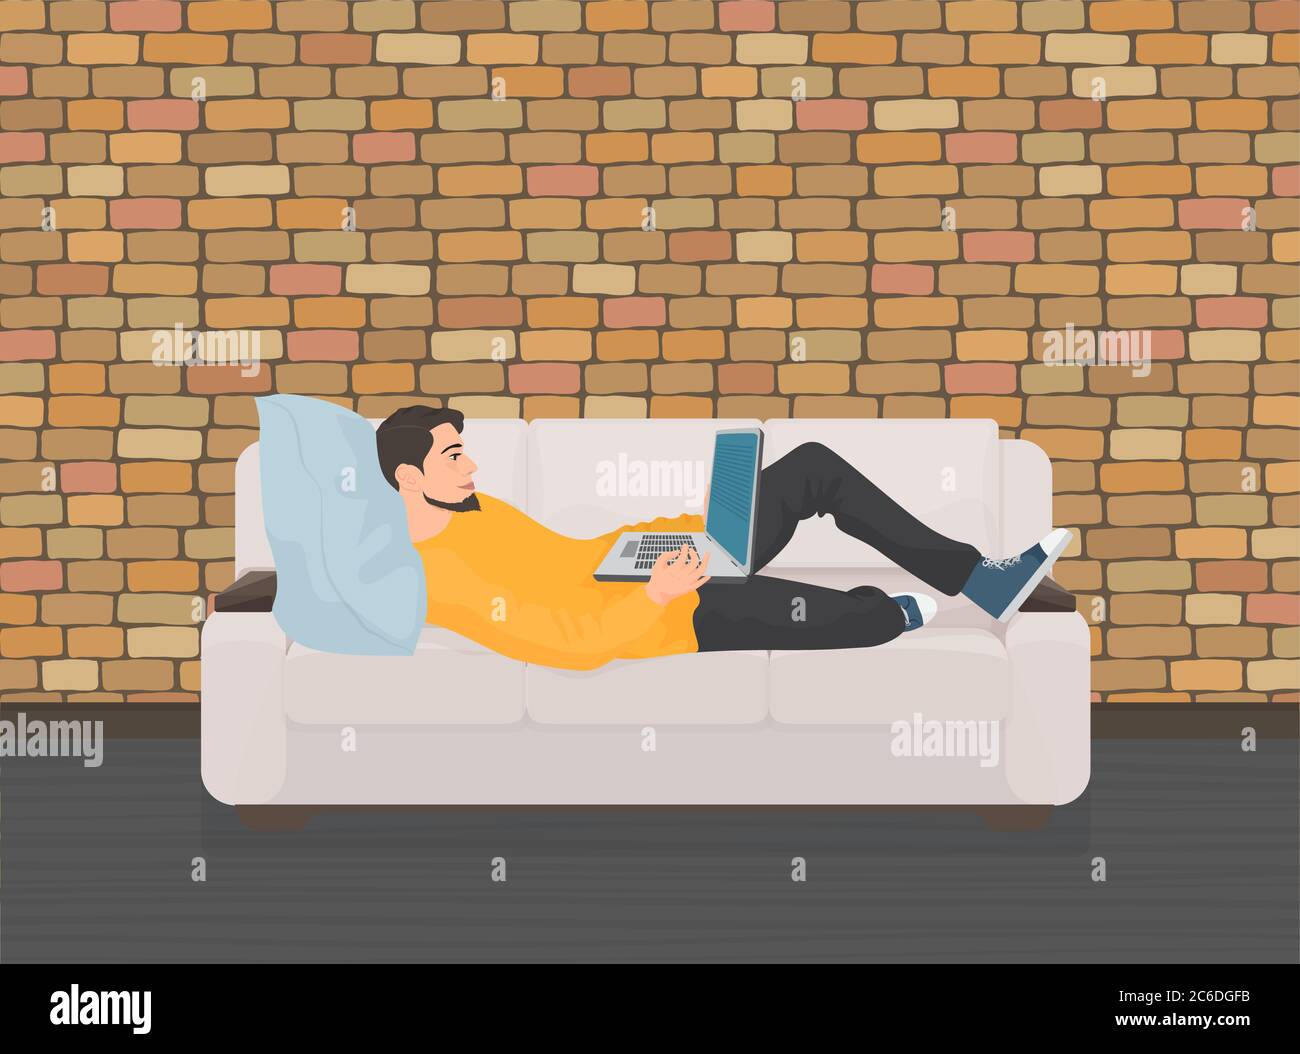 Читать лежа вредно лежа на горячем песке. Человек сидит на диване с телефоном. Человек полулежит на диване. Мужчина лежит на диване. Человечек лежит на диване.